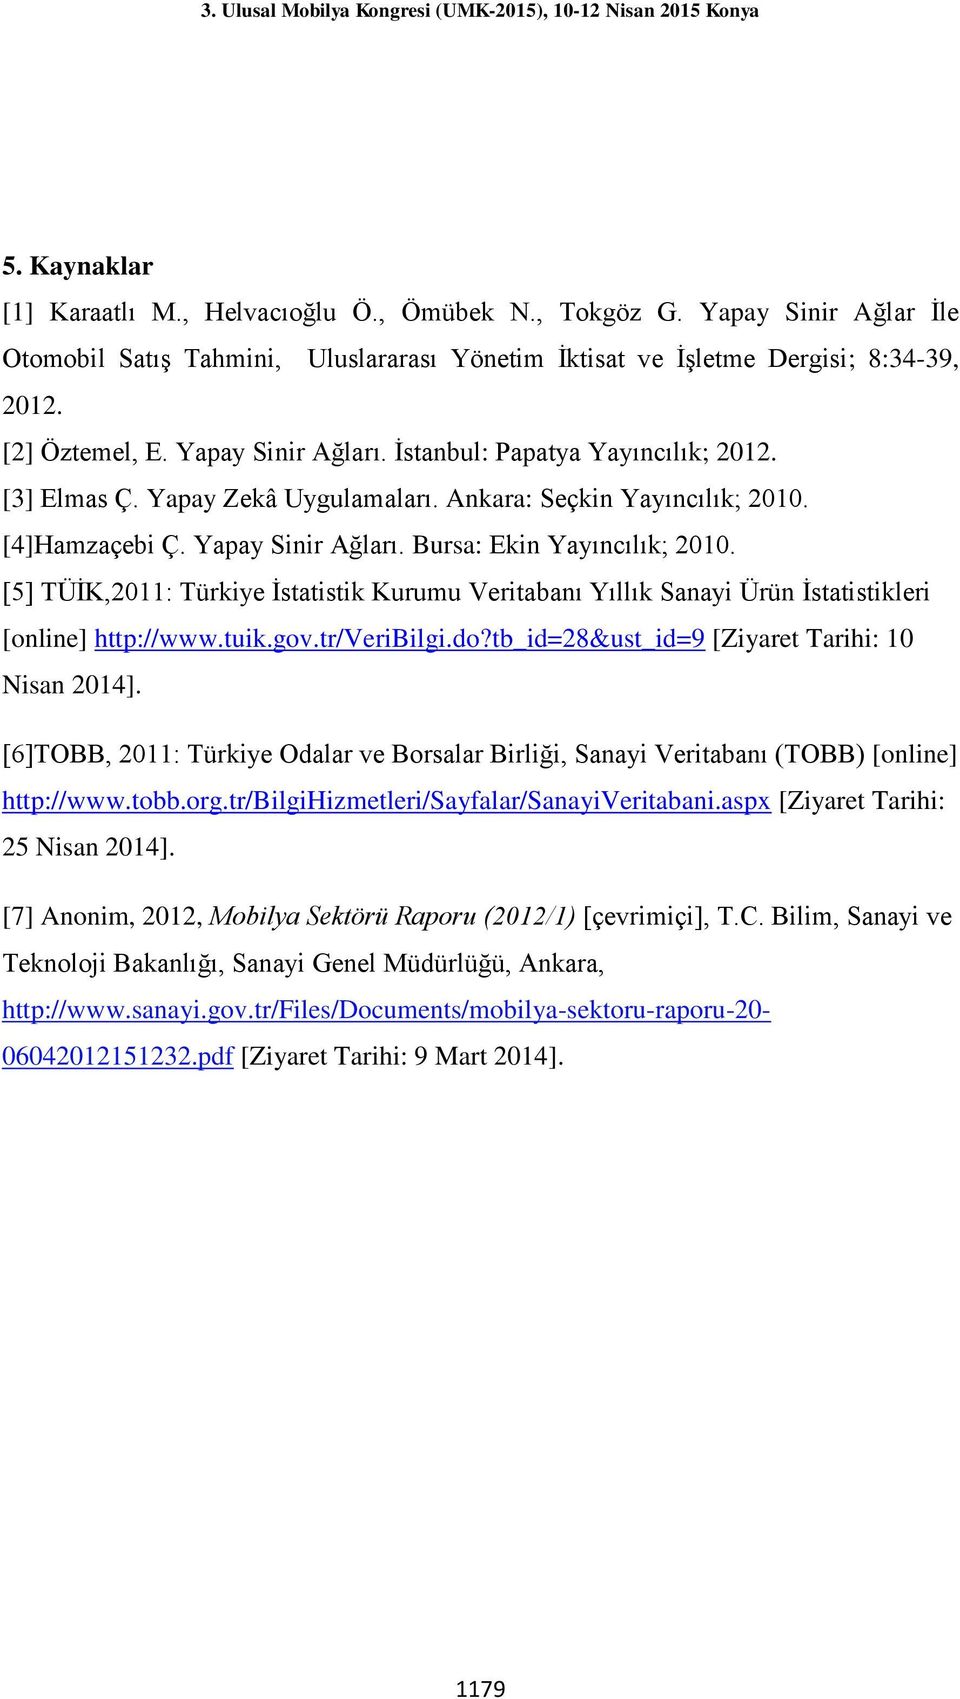 [5] TÜİK,2011: Türkiye İstatistik Kurumu Veritabanı Yıllık Sanayi Ürün İstatistikleri [online] http://www.tuik.gov.tr/veribilgi.do?tb_id=28&ust_id=9 [Ziyaret Tarihi: 10 Nisan 2014].